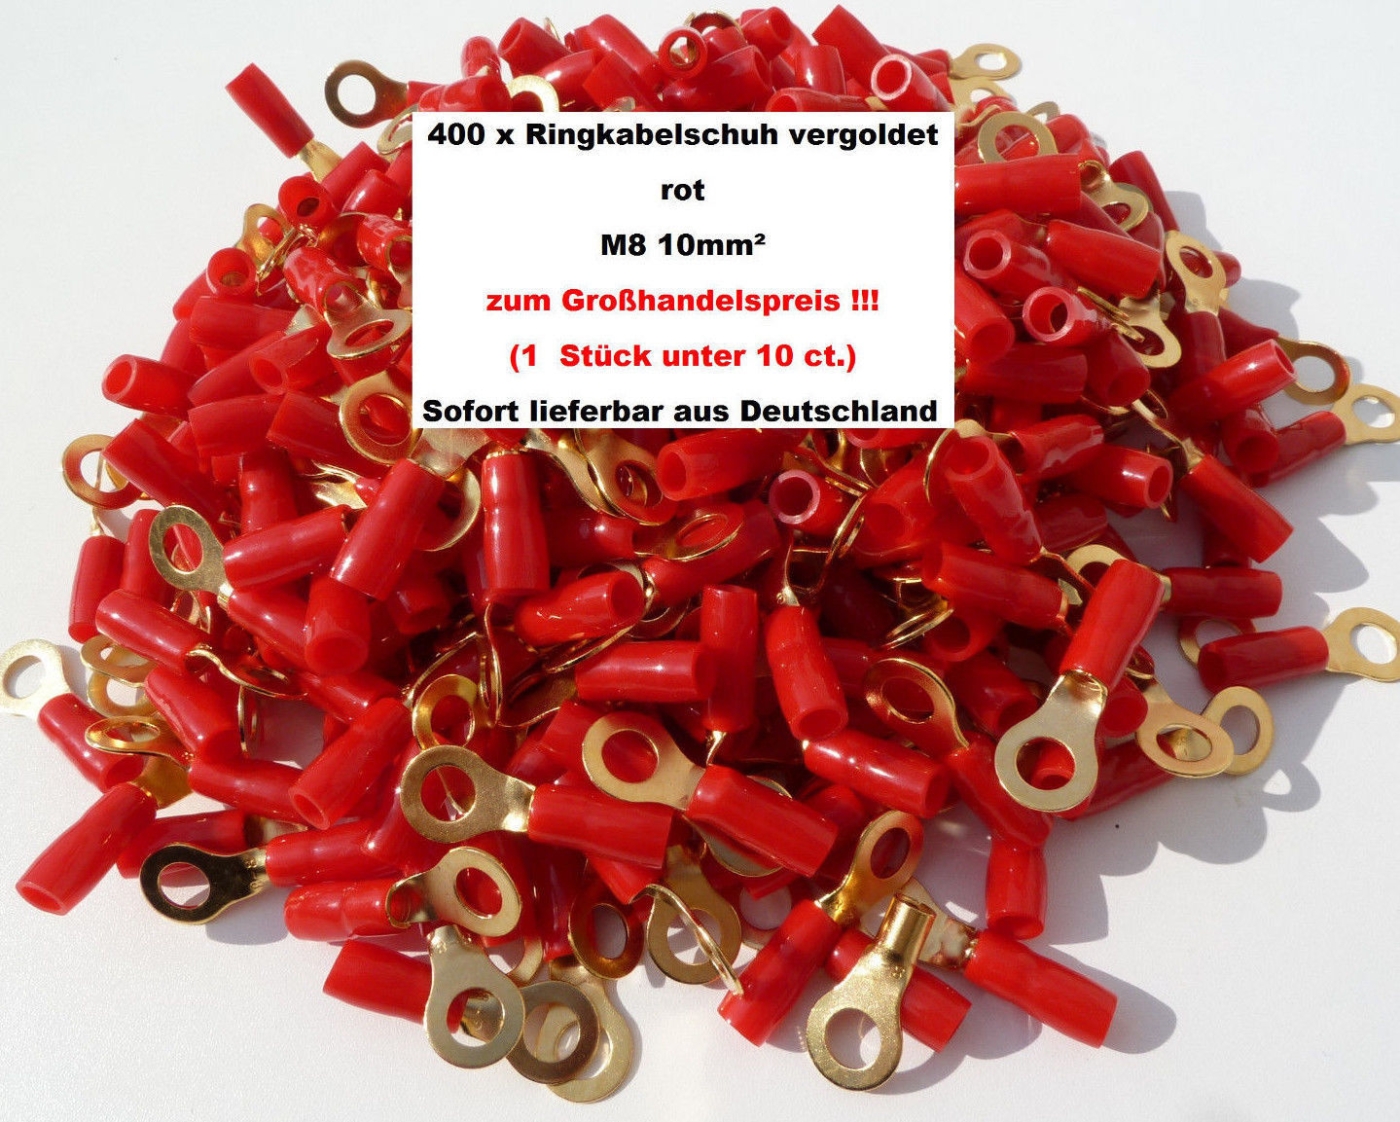 400 x AIV Ring Kabelschuh rot vergoldet 10mm- M8 zum Großhandelspreis!! 60394